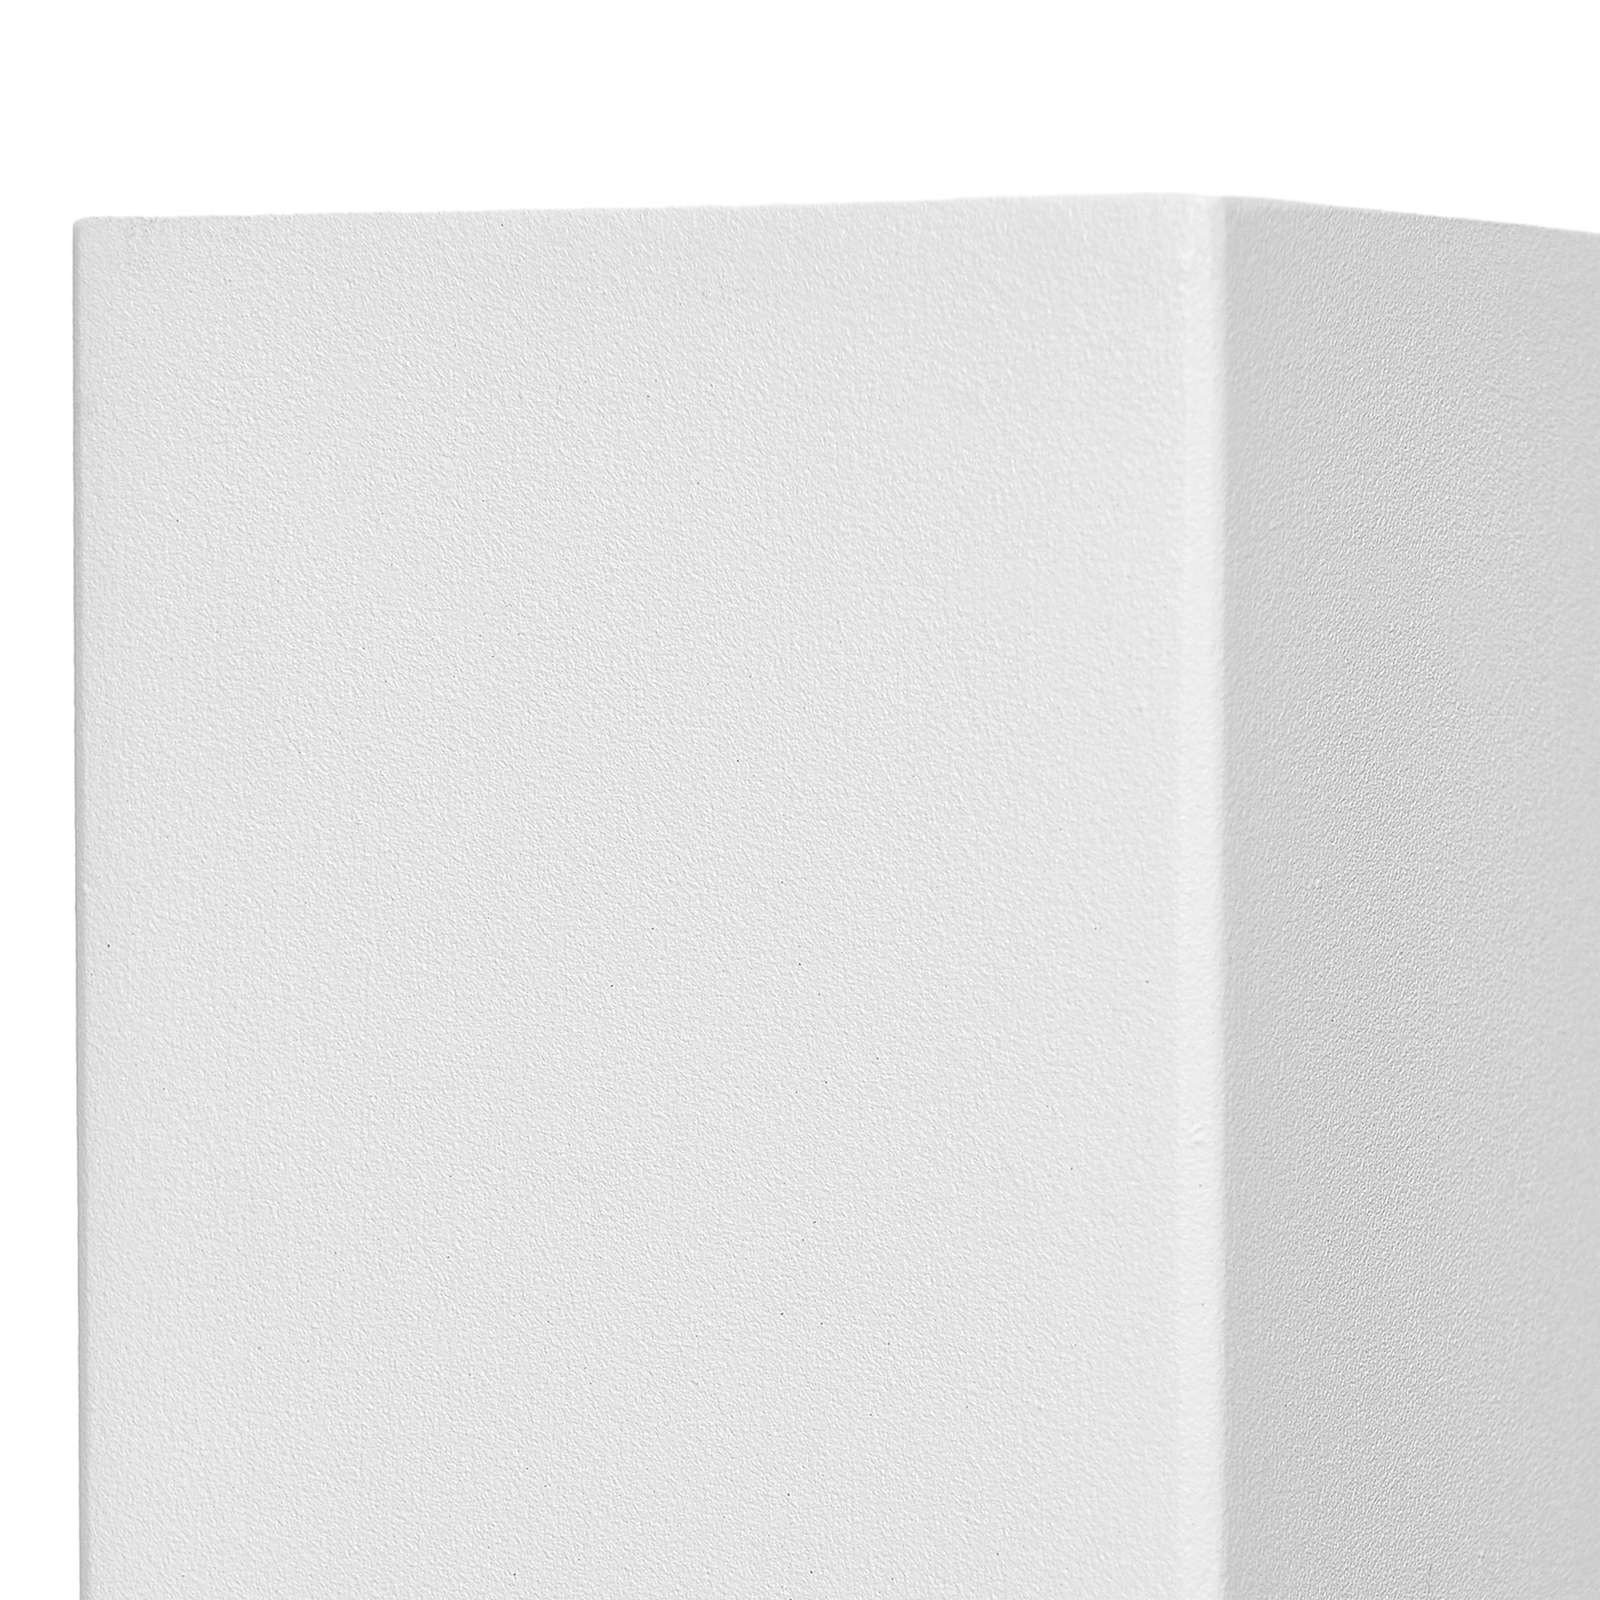 Prios applique d'extérieur Tetje, blanc, angulaire, 16 cm, set de 4 pièces